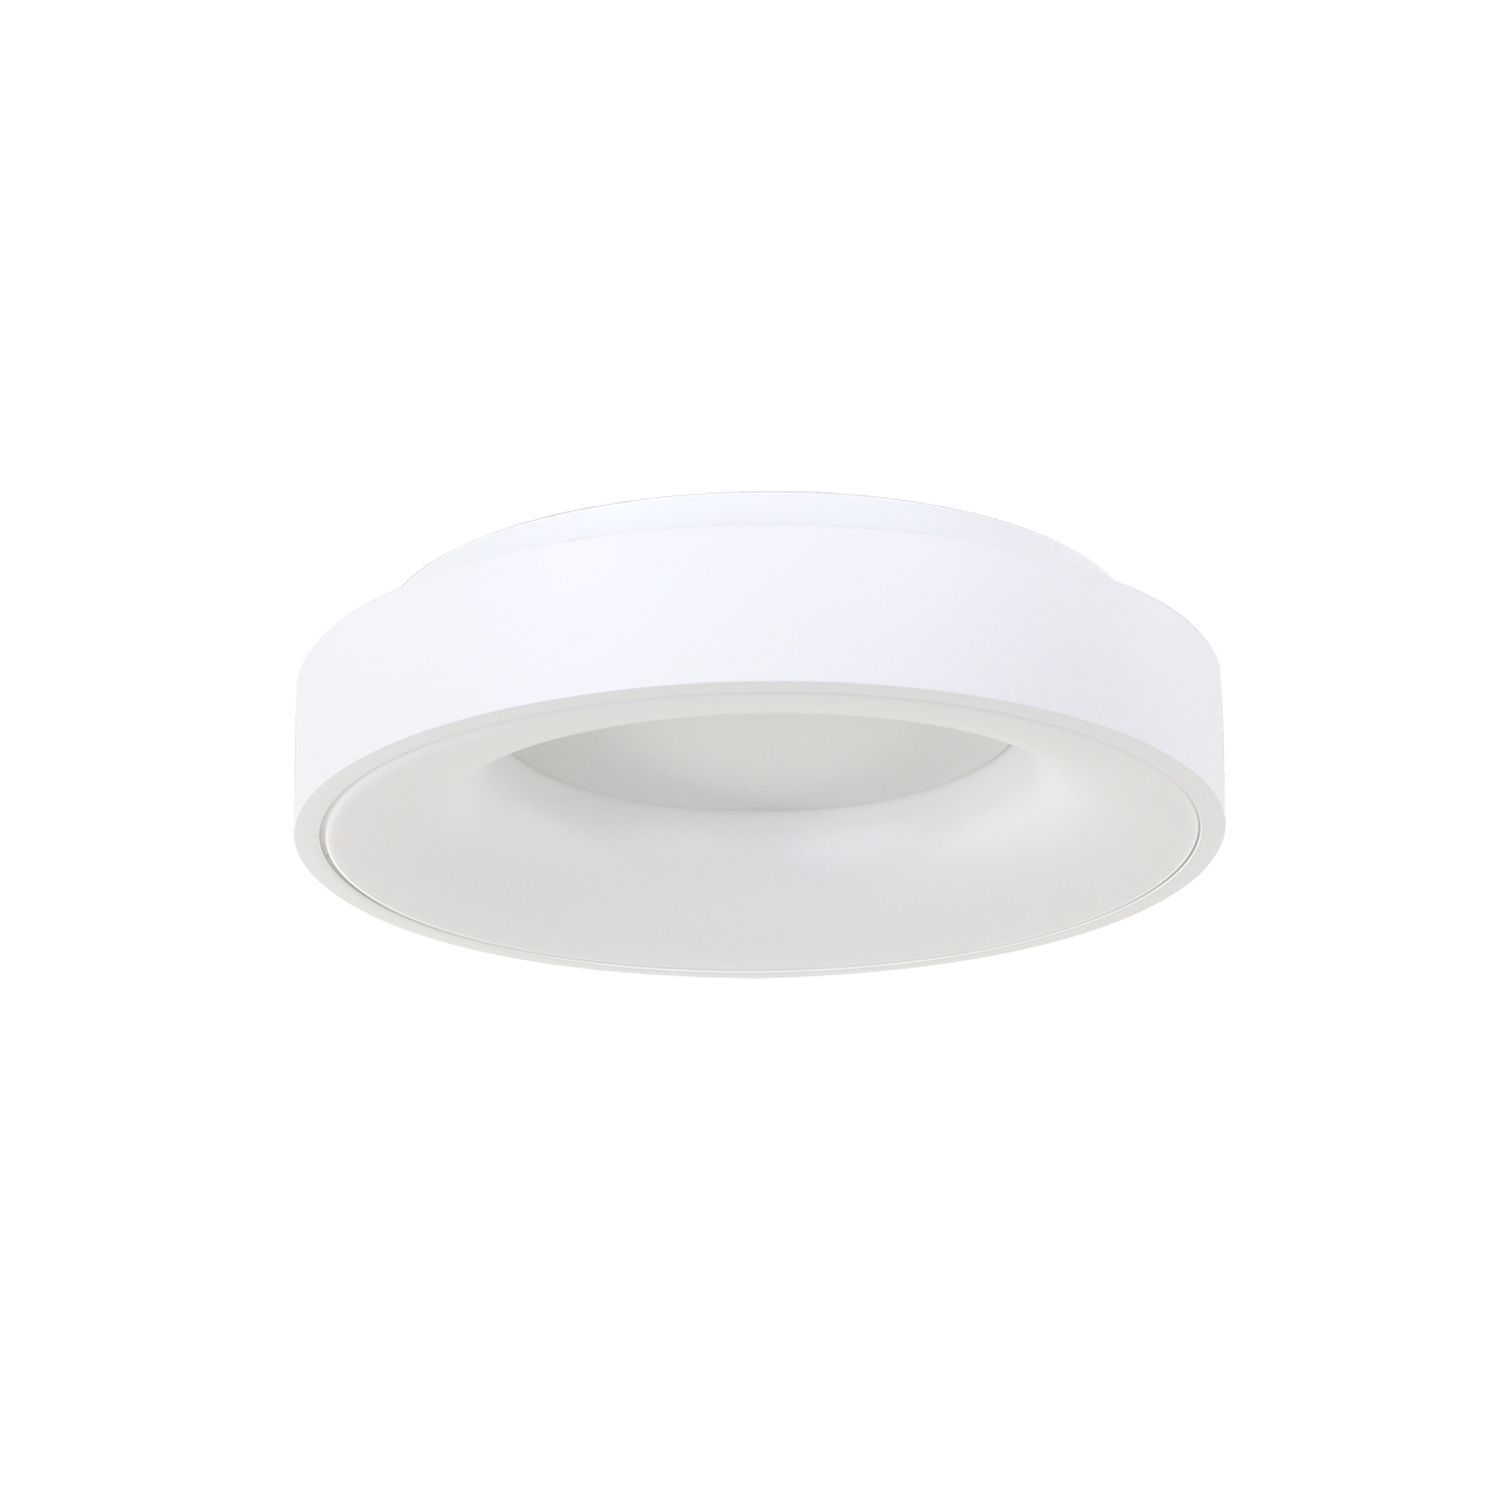 Blendarme LED Deckenlampe Weiß Ø30 cm rund 30 W 2700 K